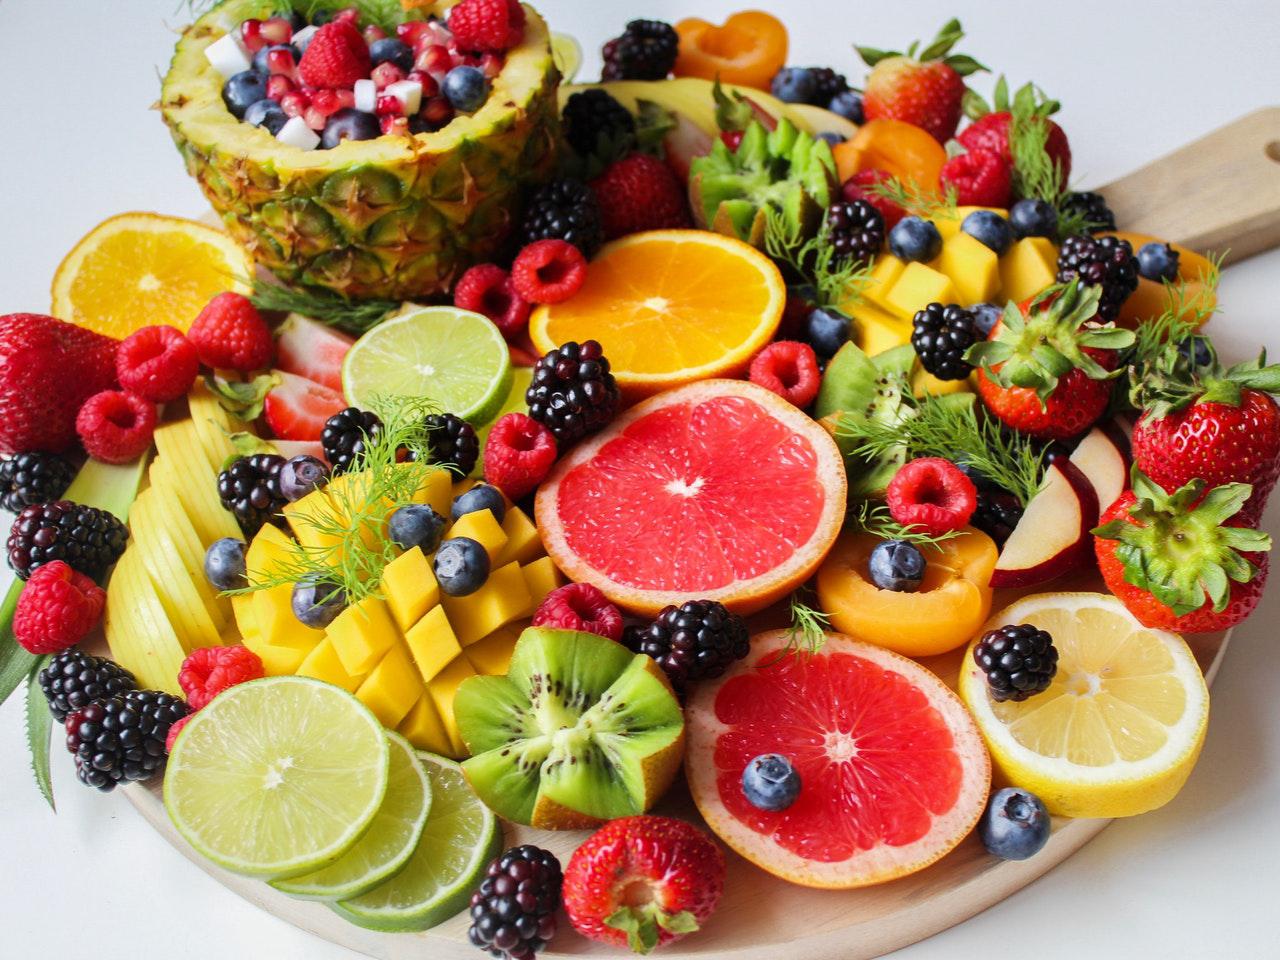 Um frutívoro se alimenta exclusivamente de frutas (Fonte: Pexels/Trang Doan)